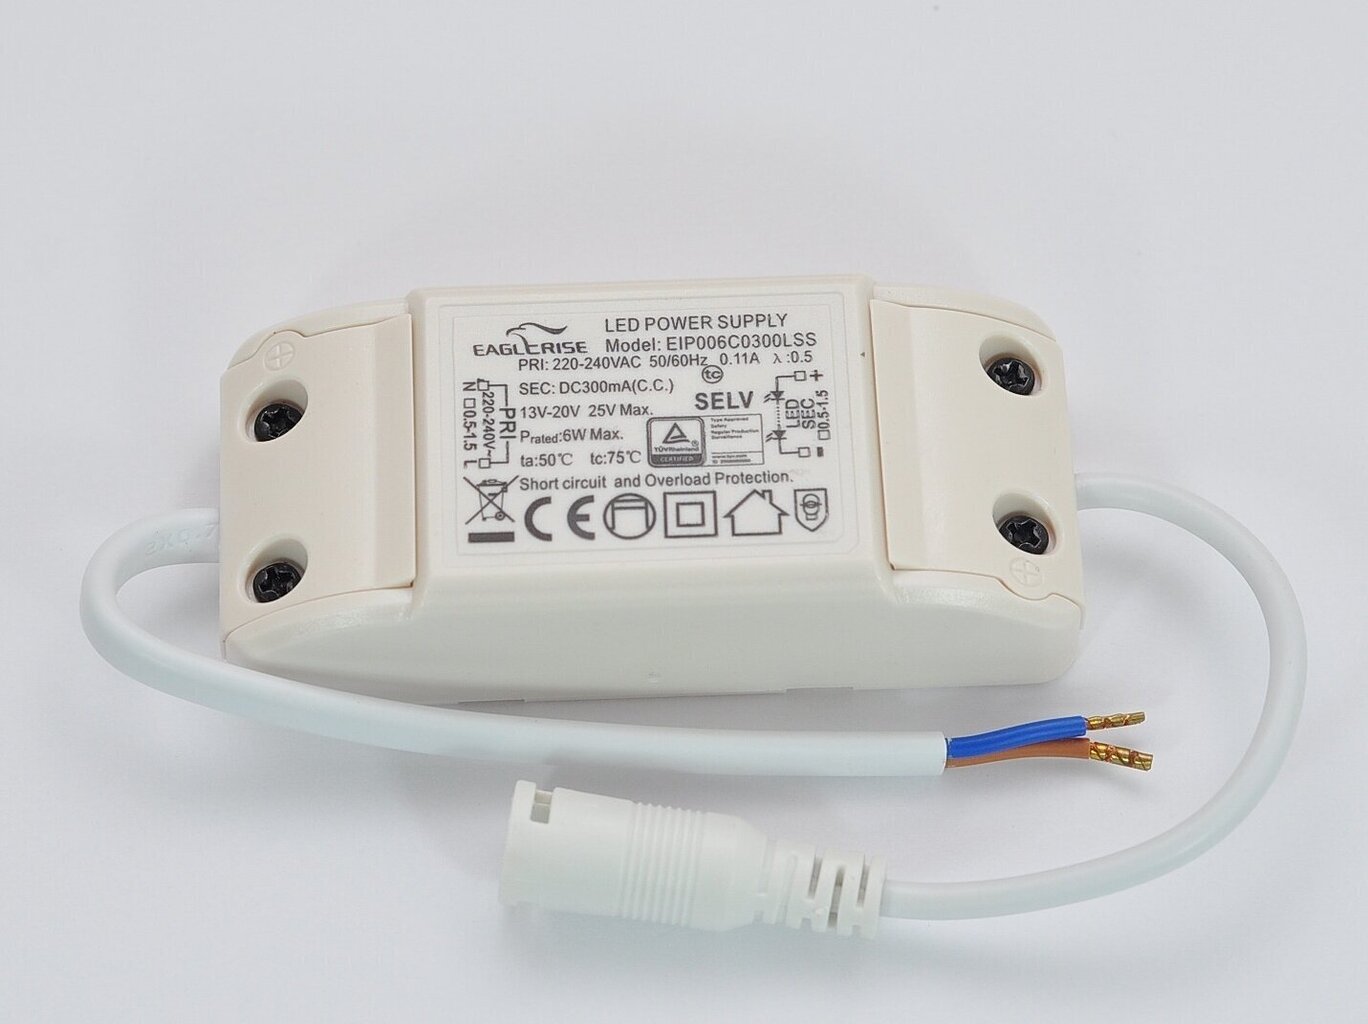 LED-paneel G.LUX GW-PN-LED-6W hind ja info | Süvistatavad ja LED valgustid | kaup24.ee